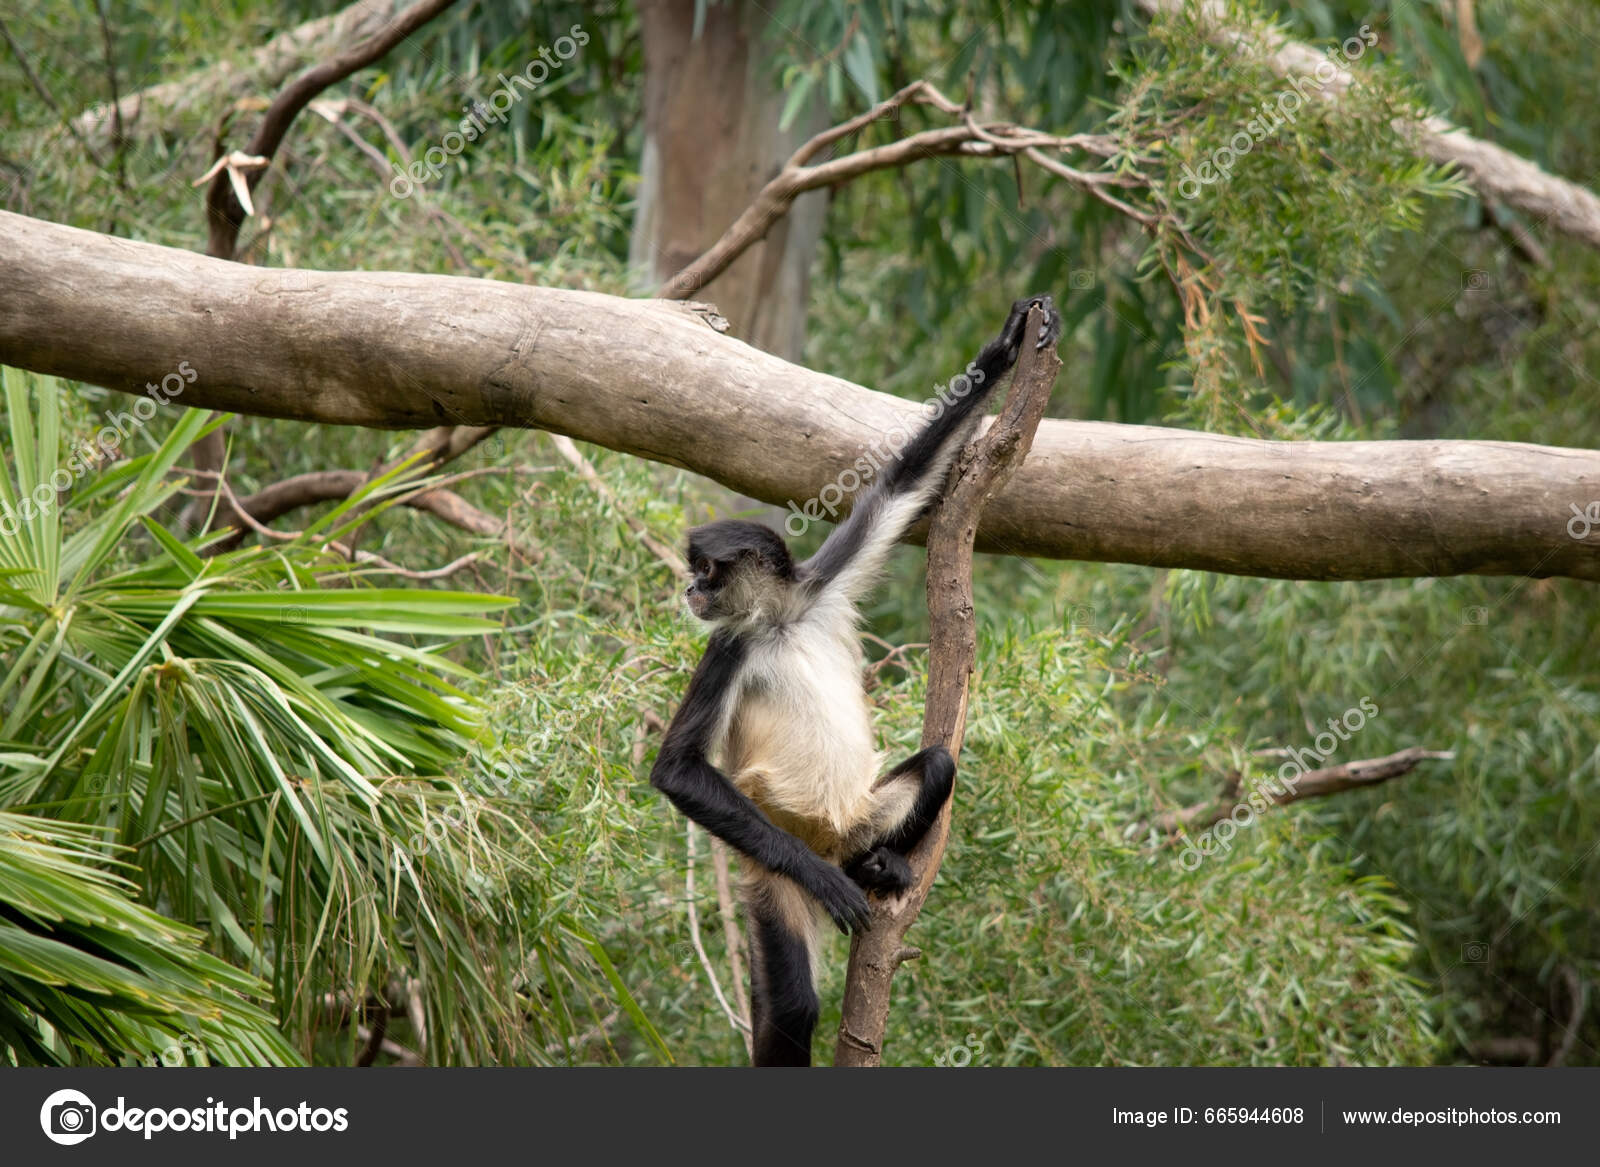 Fotos de Macacos aranha, Imagens de Macacos aranha sem royalties